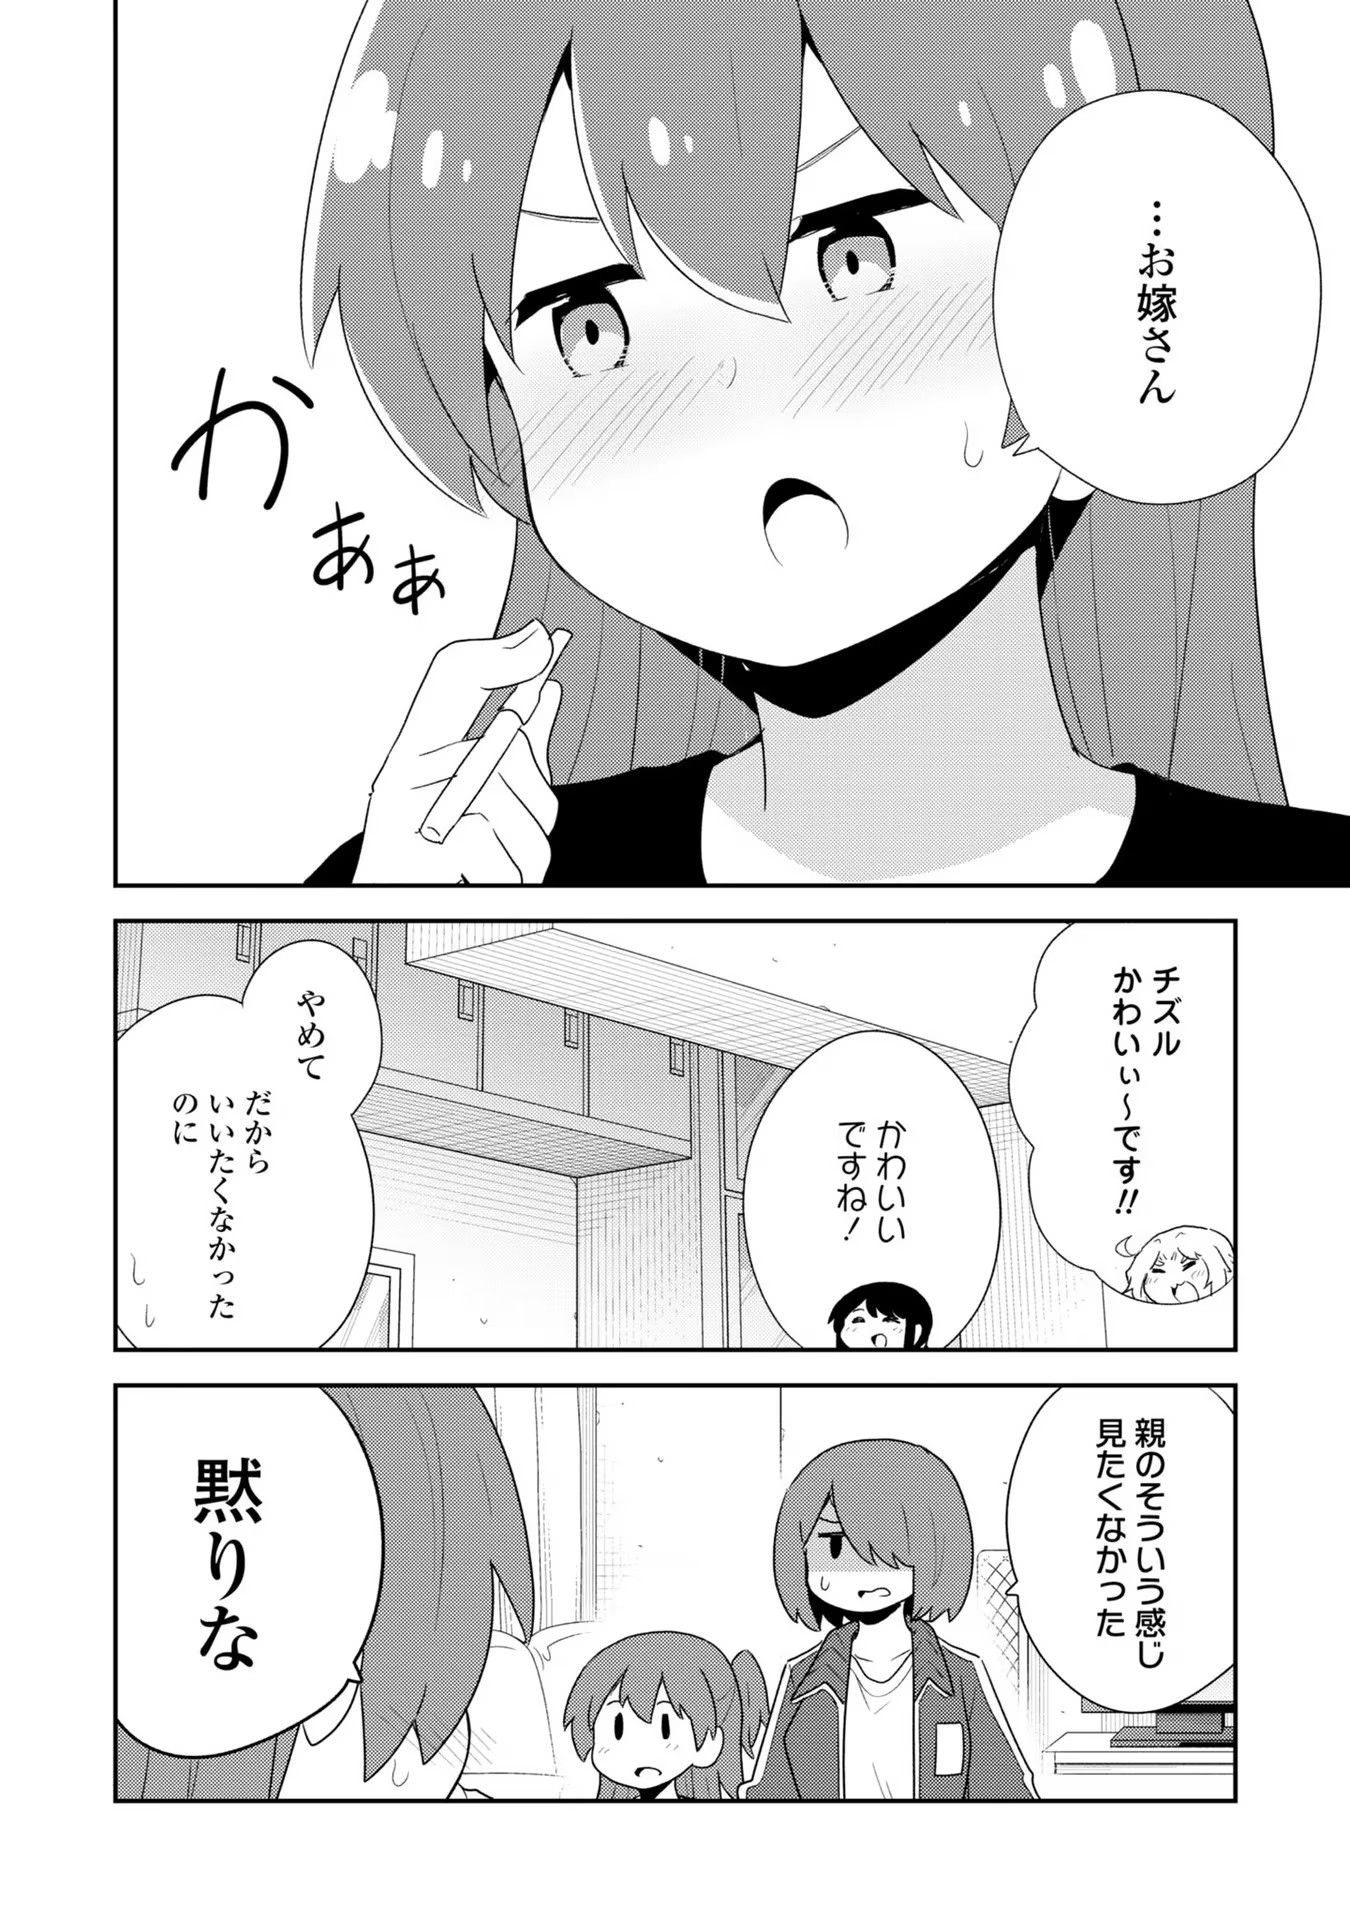 Watashi ni Tenshi ga Maiorita! - Chapter 93.5-1 - Page 8